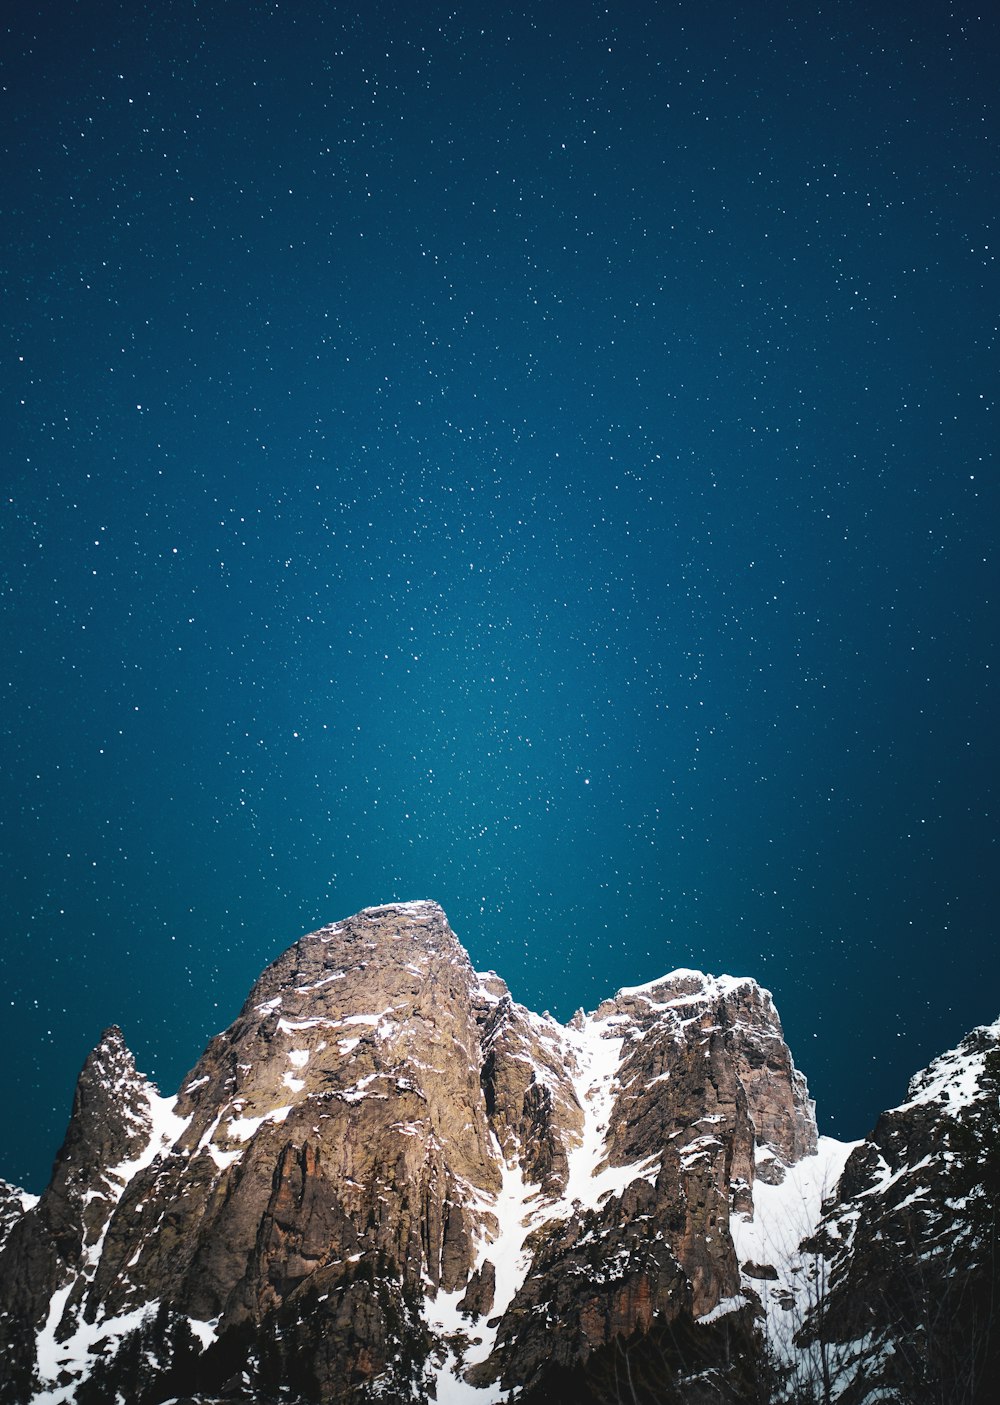 Le ciel nocturne au-dessus d’une chaîne de montagnes enneigée